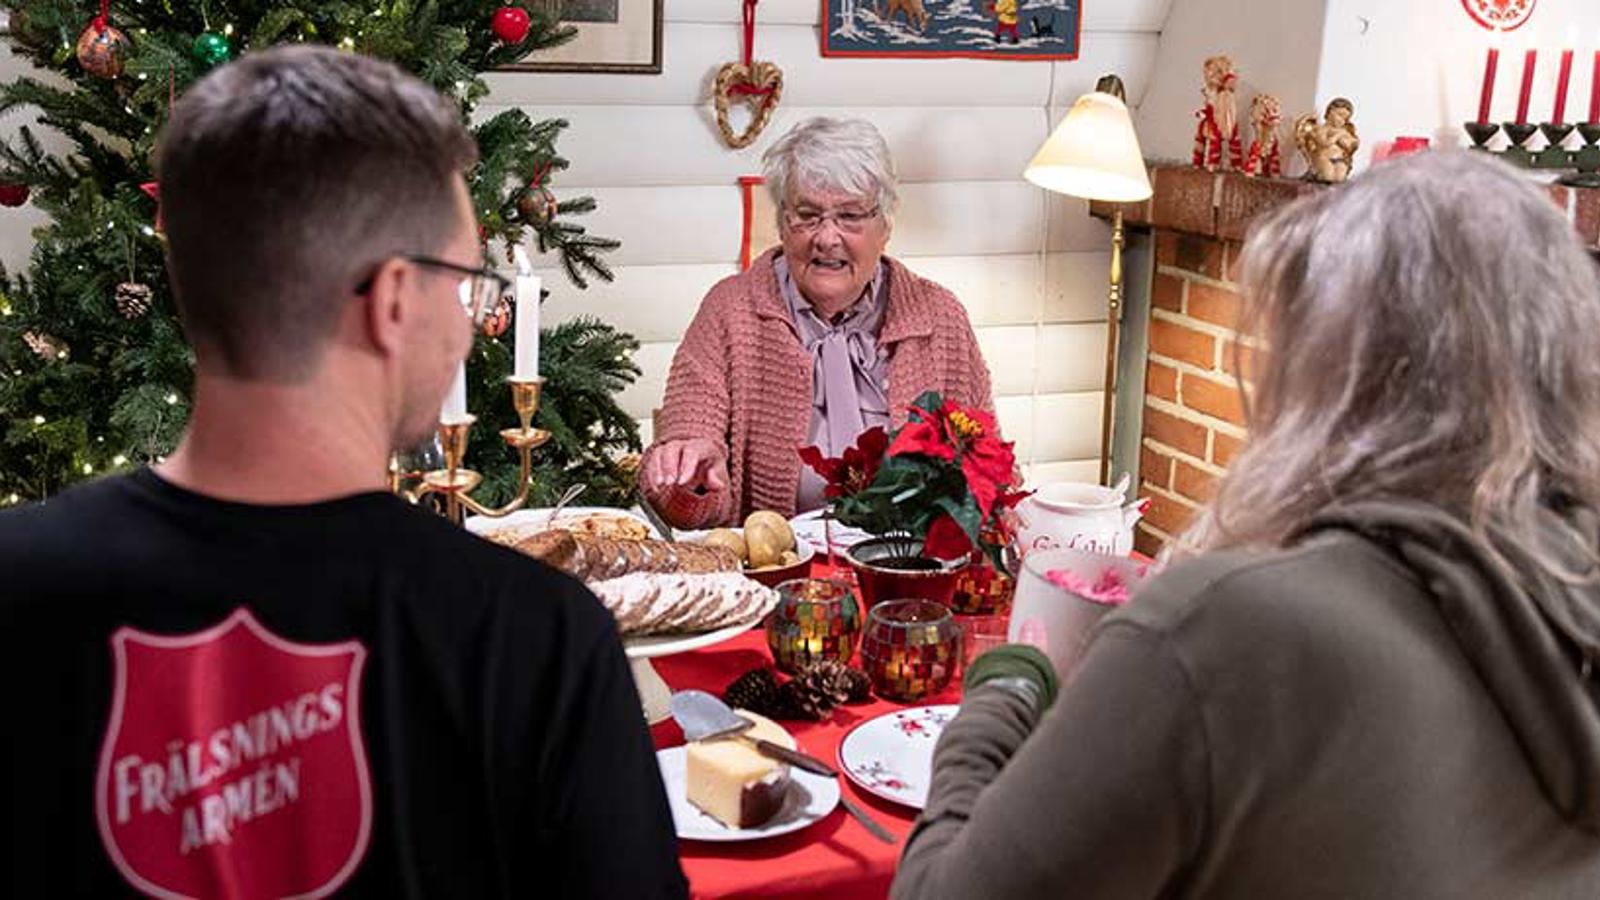 Ryggtavlan på en man från Frälsningsarmén som sitter vid ett julbord och äter julmat tillsammans med två äldre damer. I bakgrunden står det en pyntad julgran. 